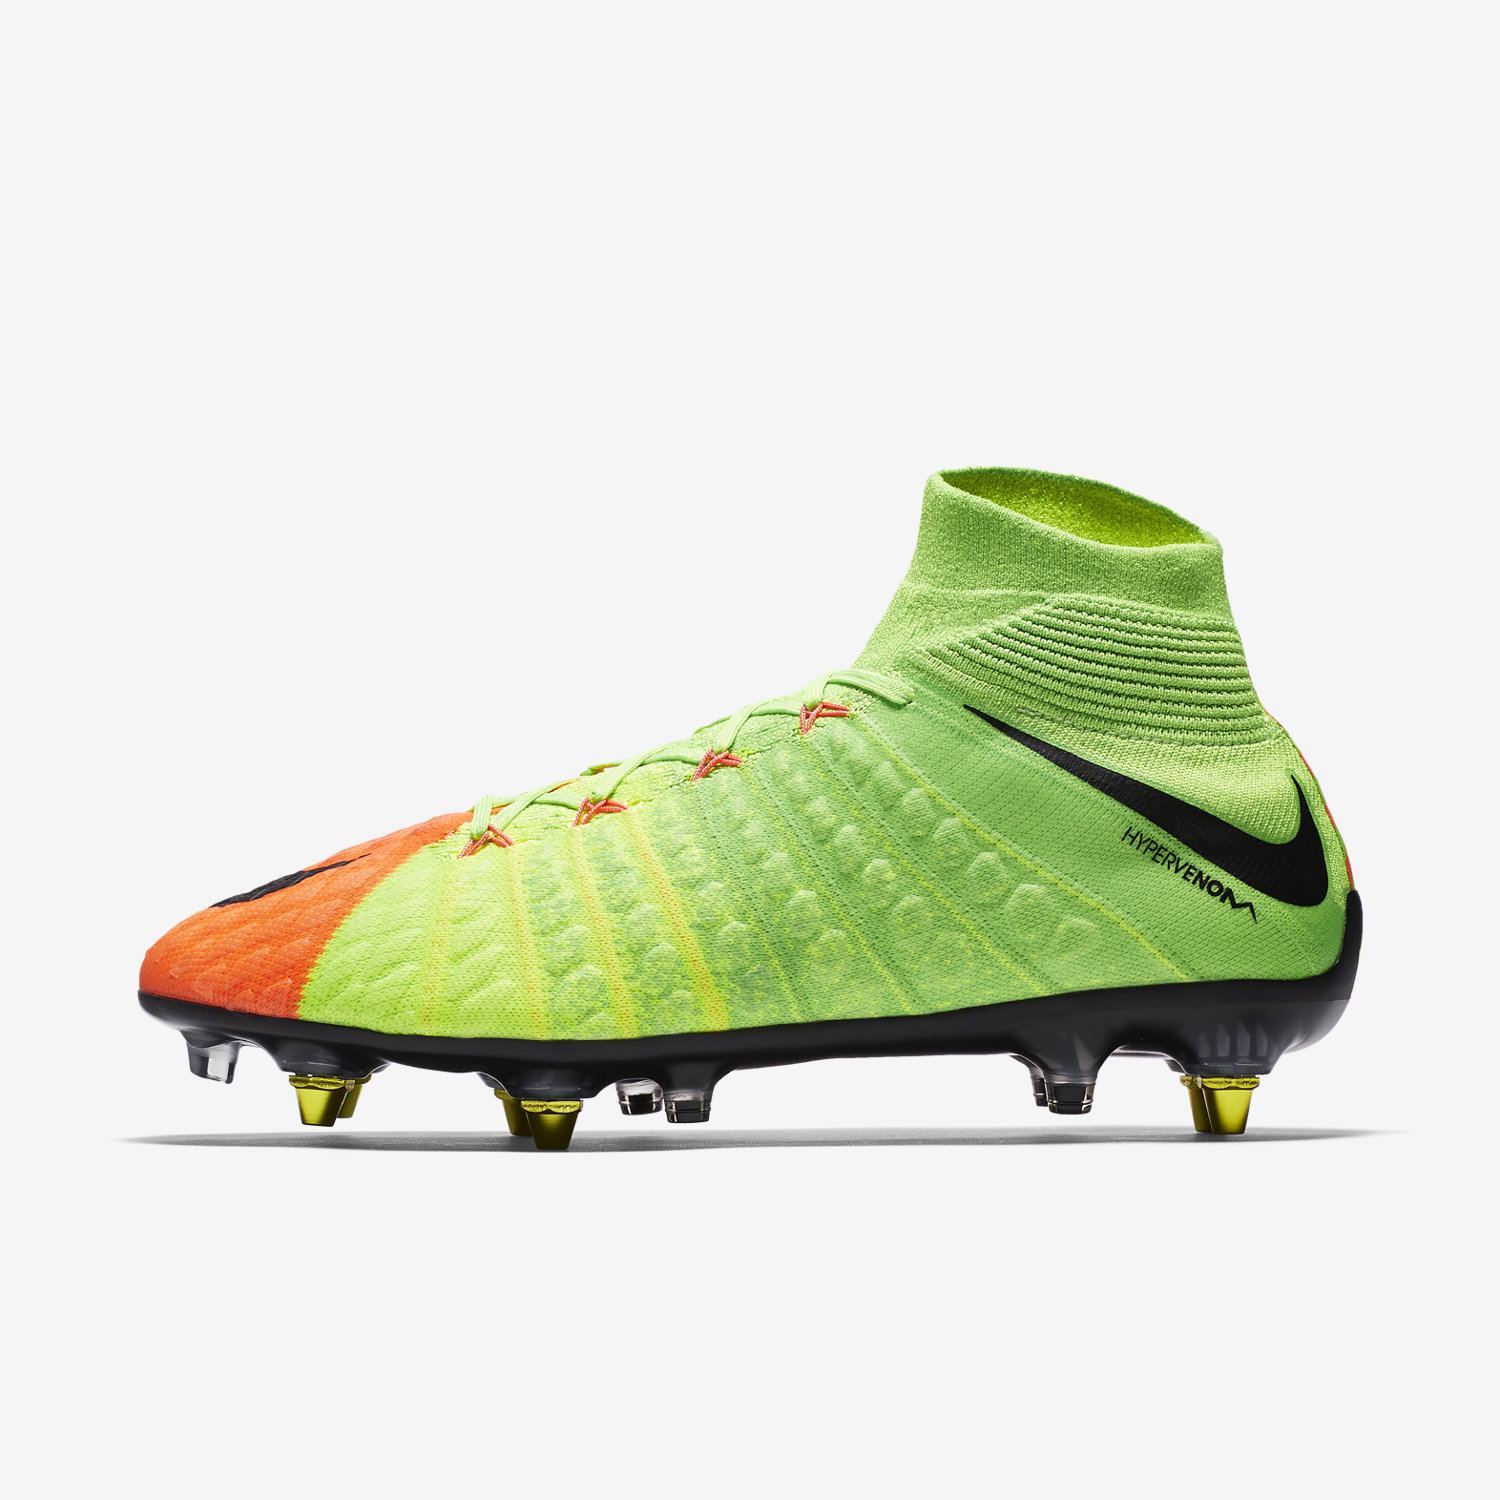 ποδοσφαιρικα παπουτσια ανδρικα Nike Hypervenom Phantom 3 DF SG-PRO Anti-Clog πρασινο/πορτοκαλι/μαυρα